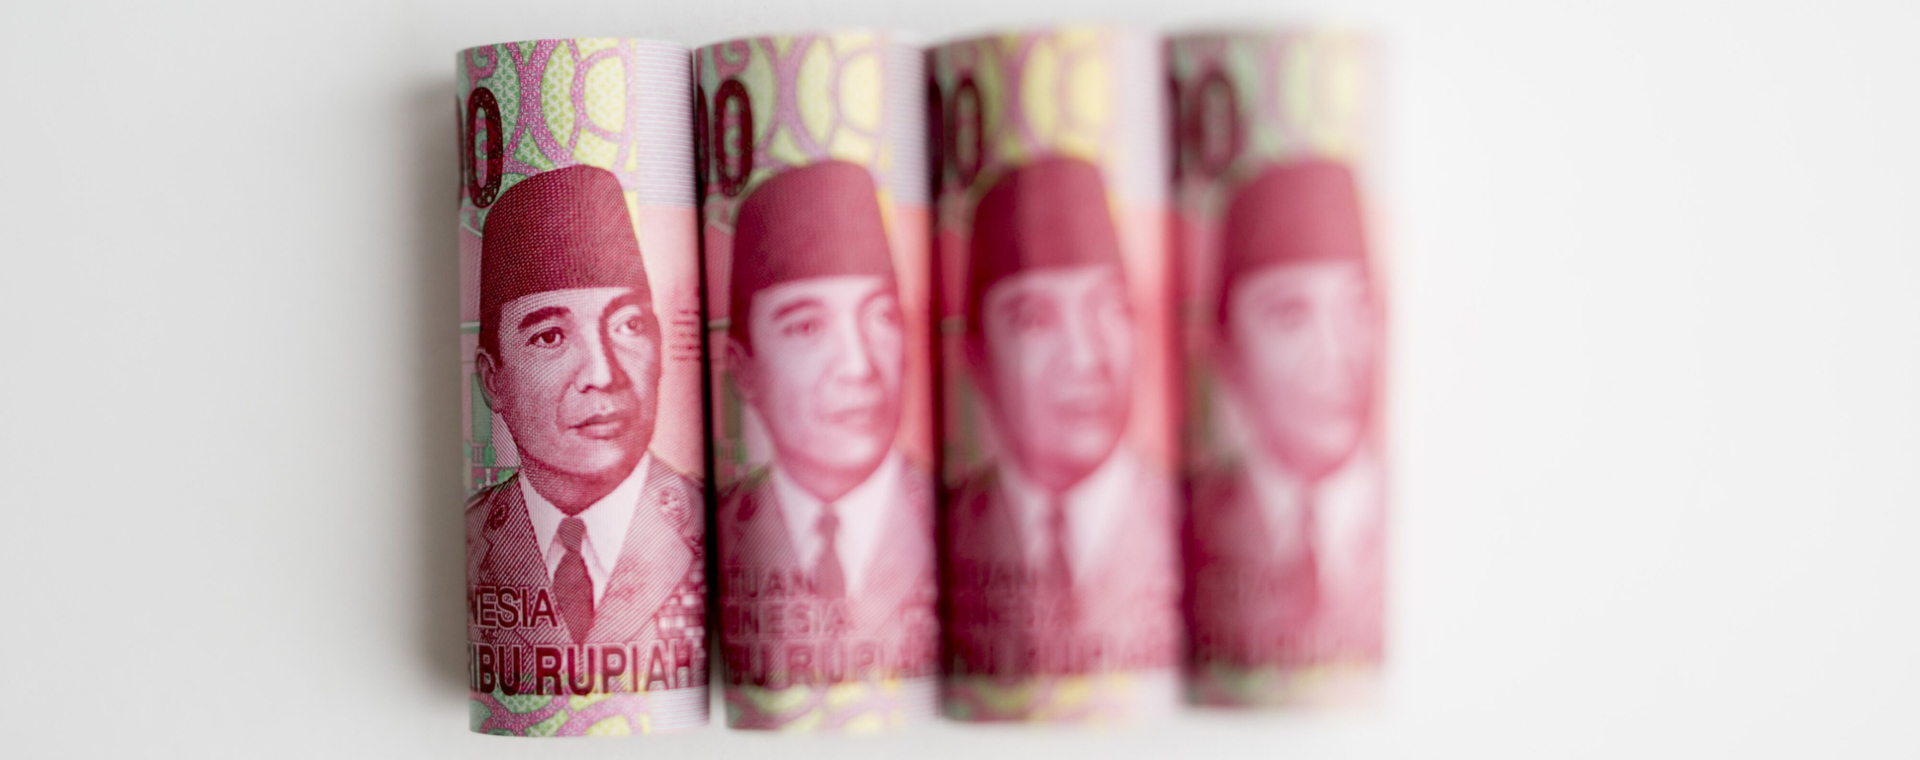 Potret wajah Mantan Presiden Sukarno dalam uang lembar Rp100.000 yang berjejer. - Bloomberg/Brent Lewin